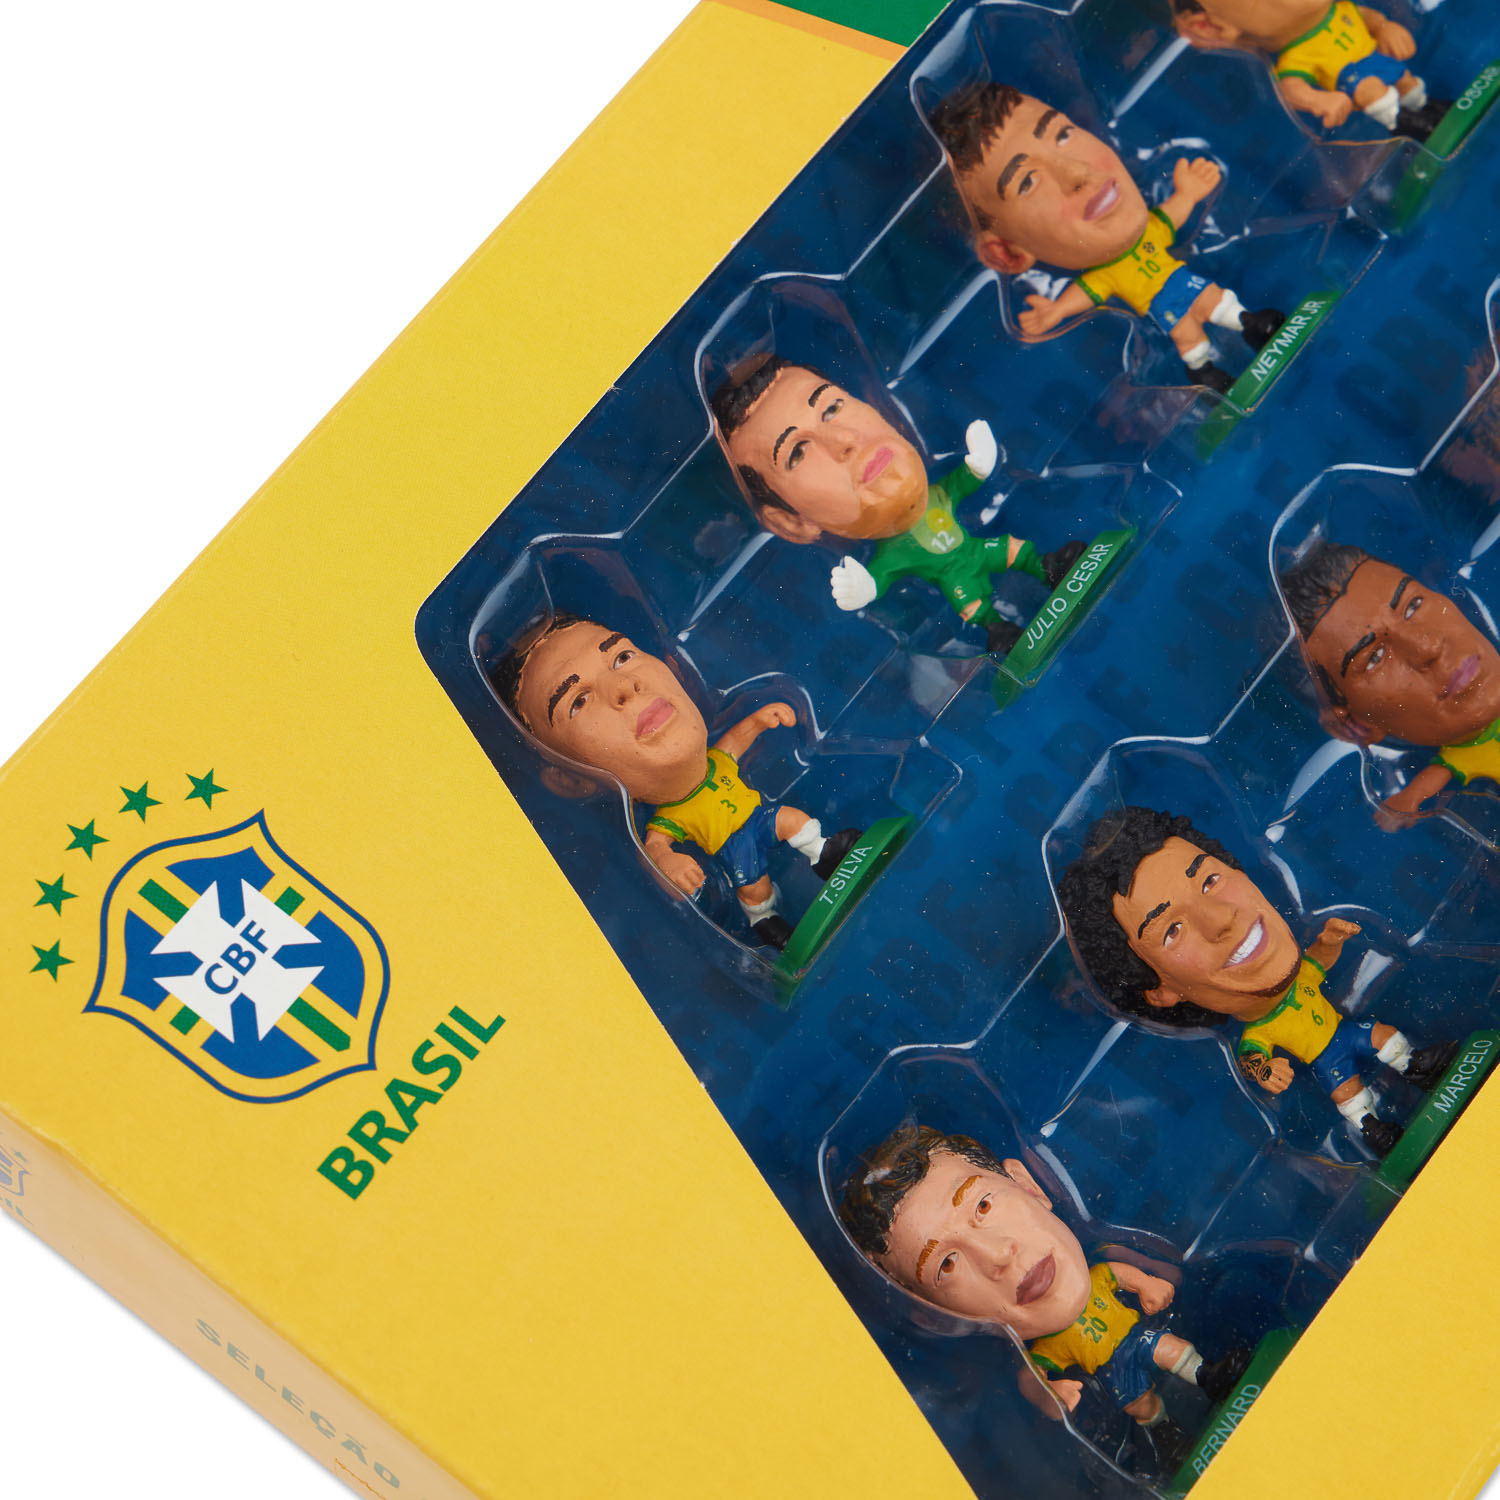 Buy SoccerStarz Brazil from £3.96 (Today) – Best Deals on